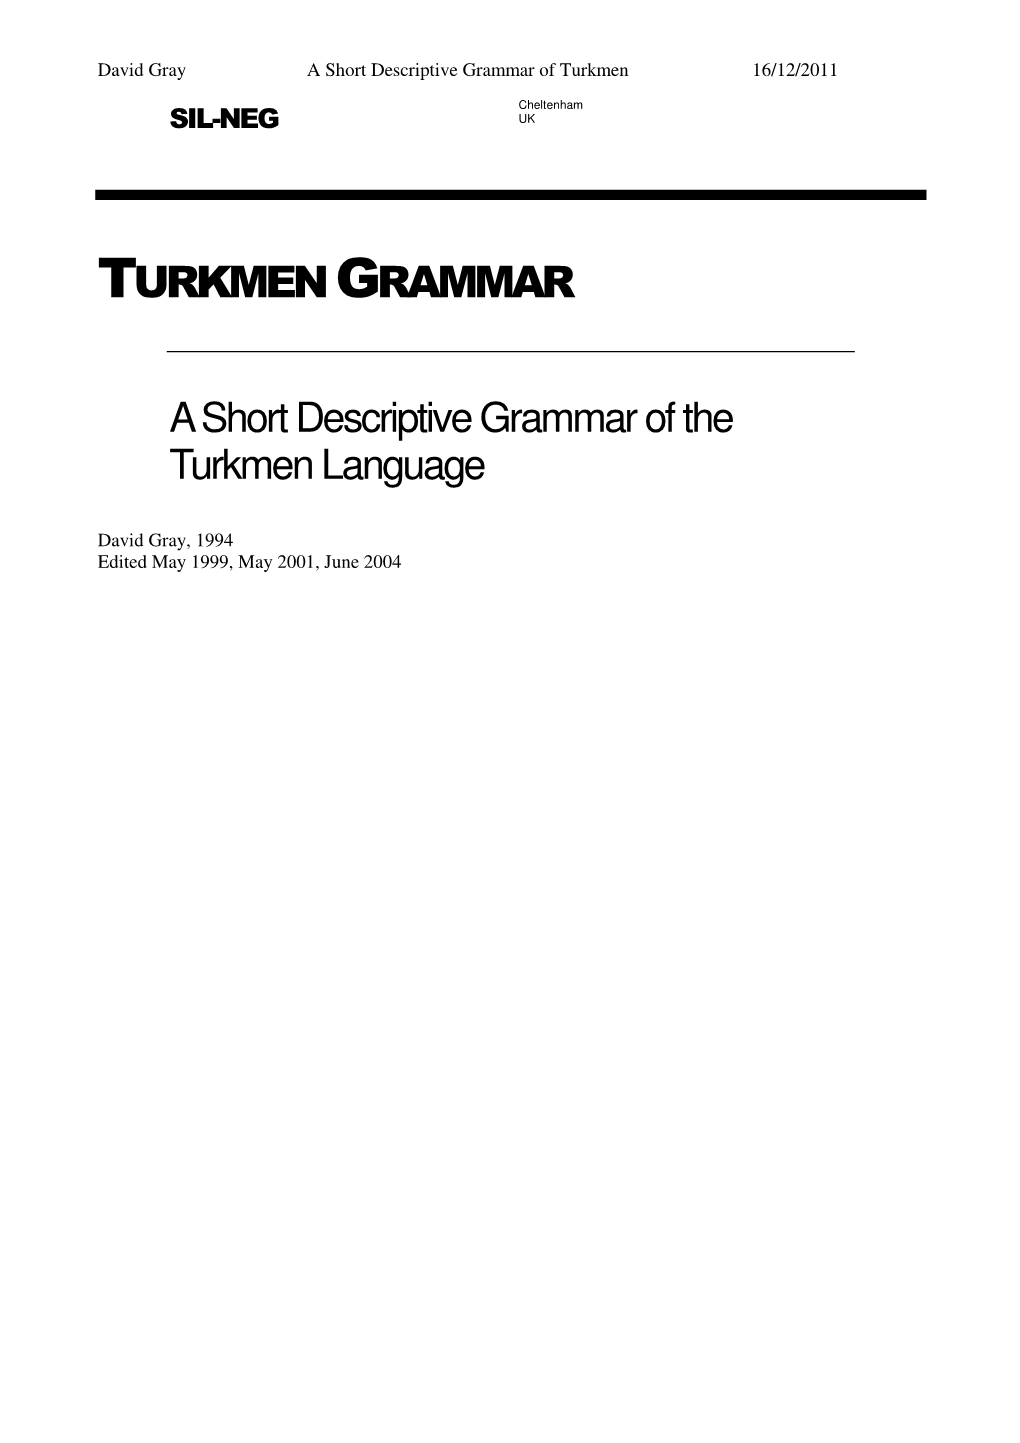 Turkmen Grammar